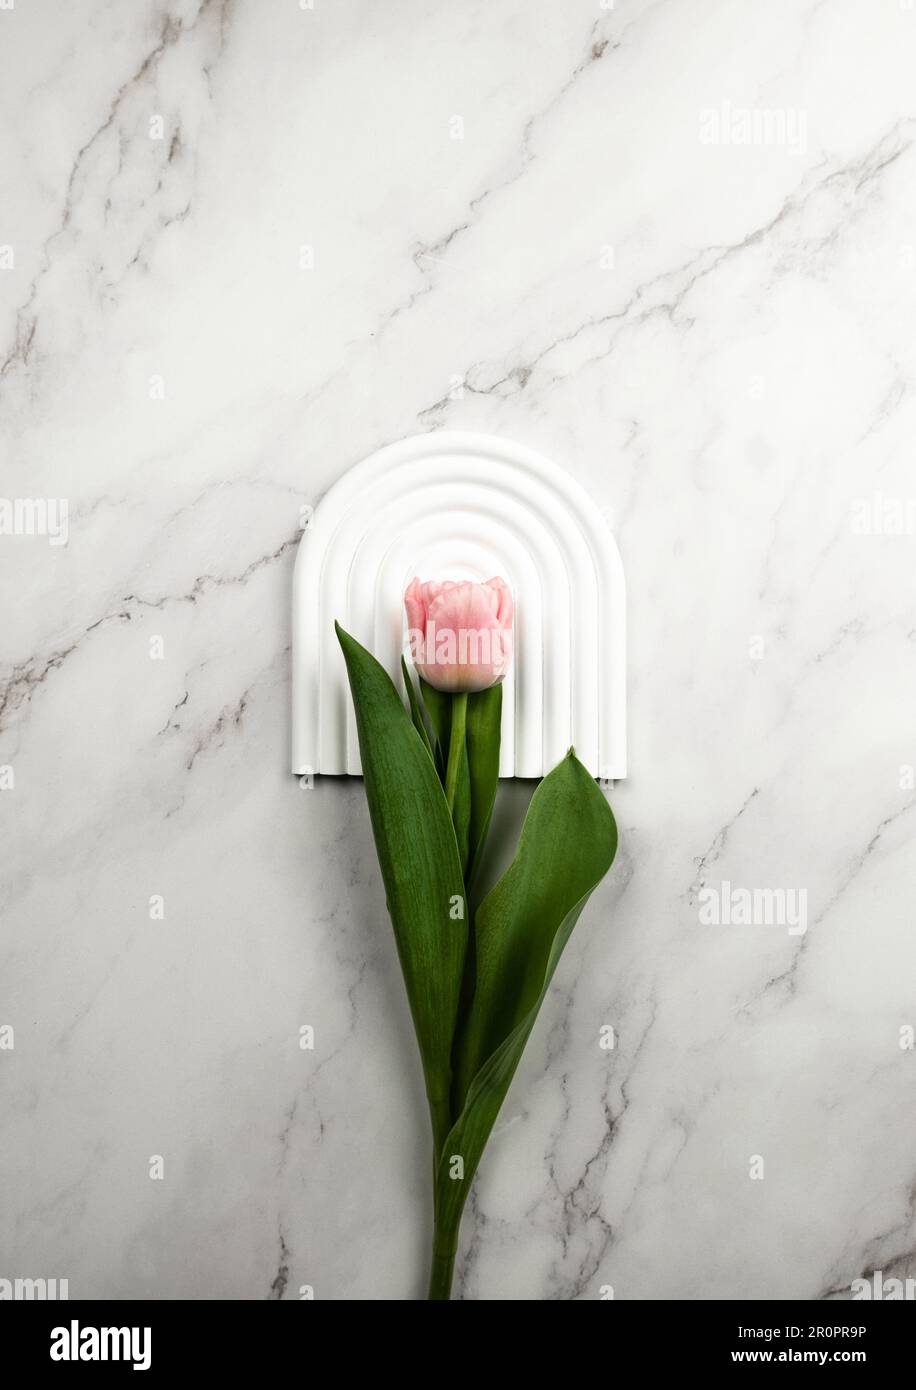 Draufsicht auf pinkfarbene Tulpe auf weißem Bogenblech, weißer Marmorhintergrund. Frühlingsblume flach liegend. Speicherplatz kopieren. Stockfoto